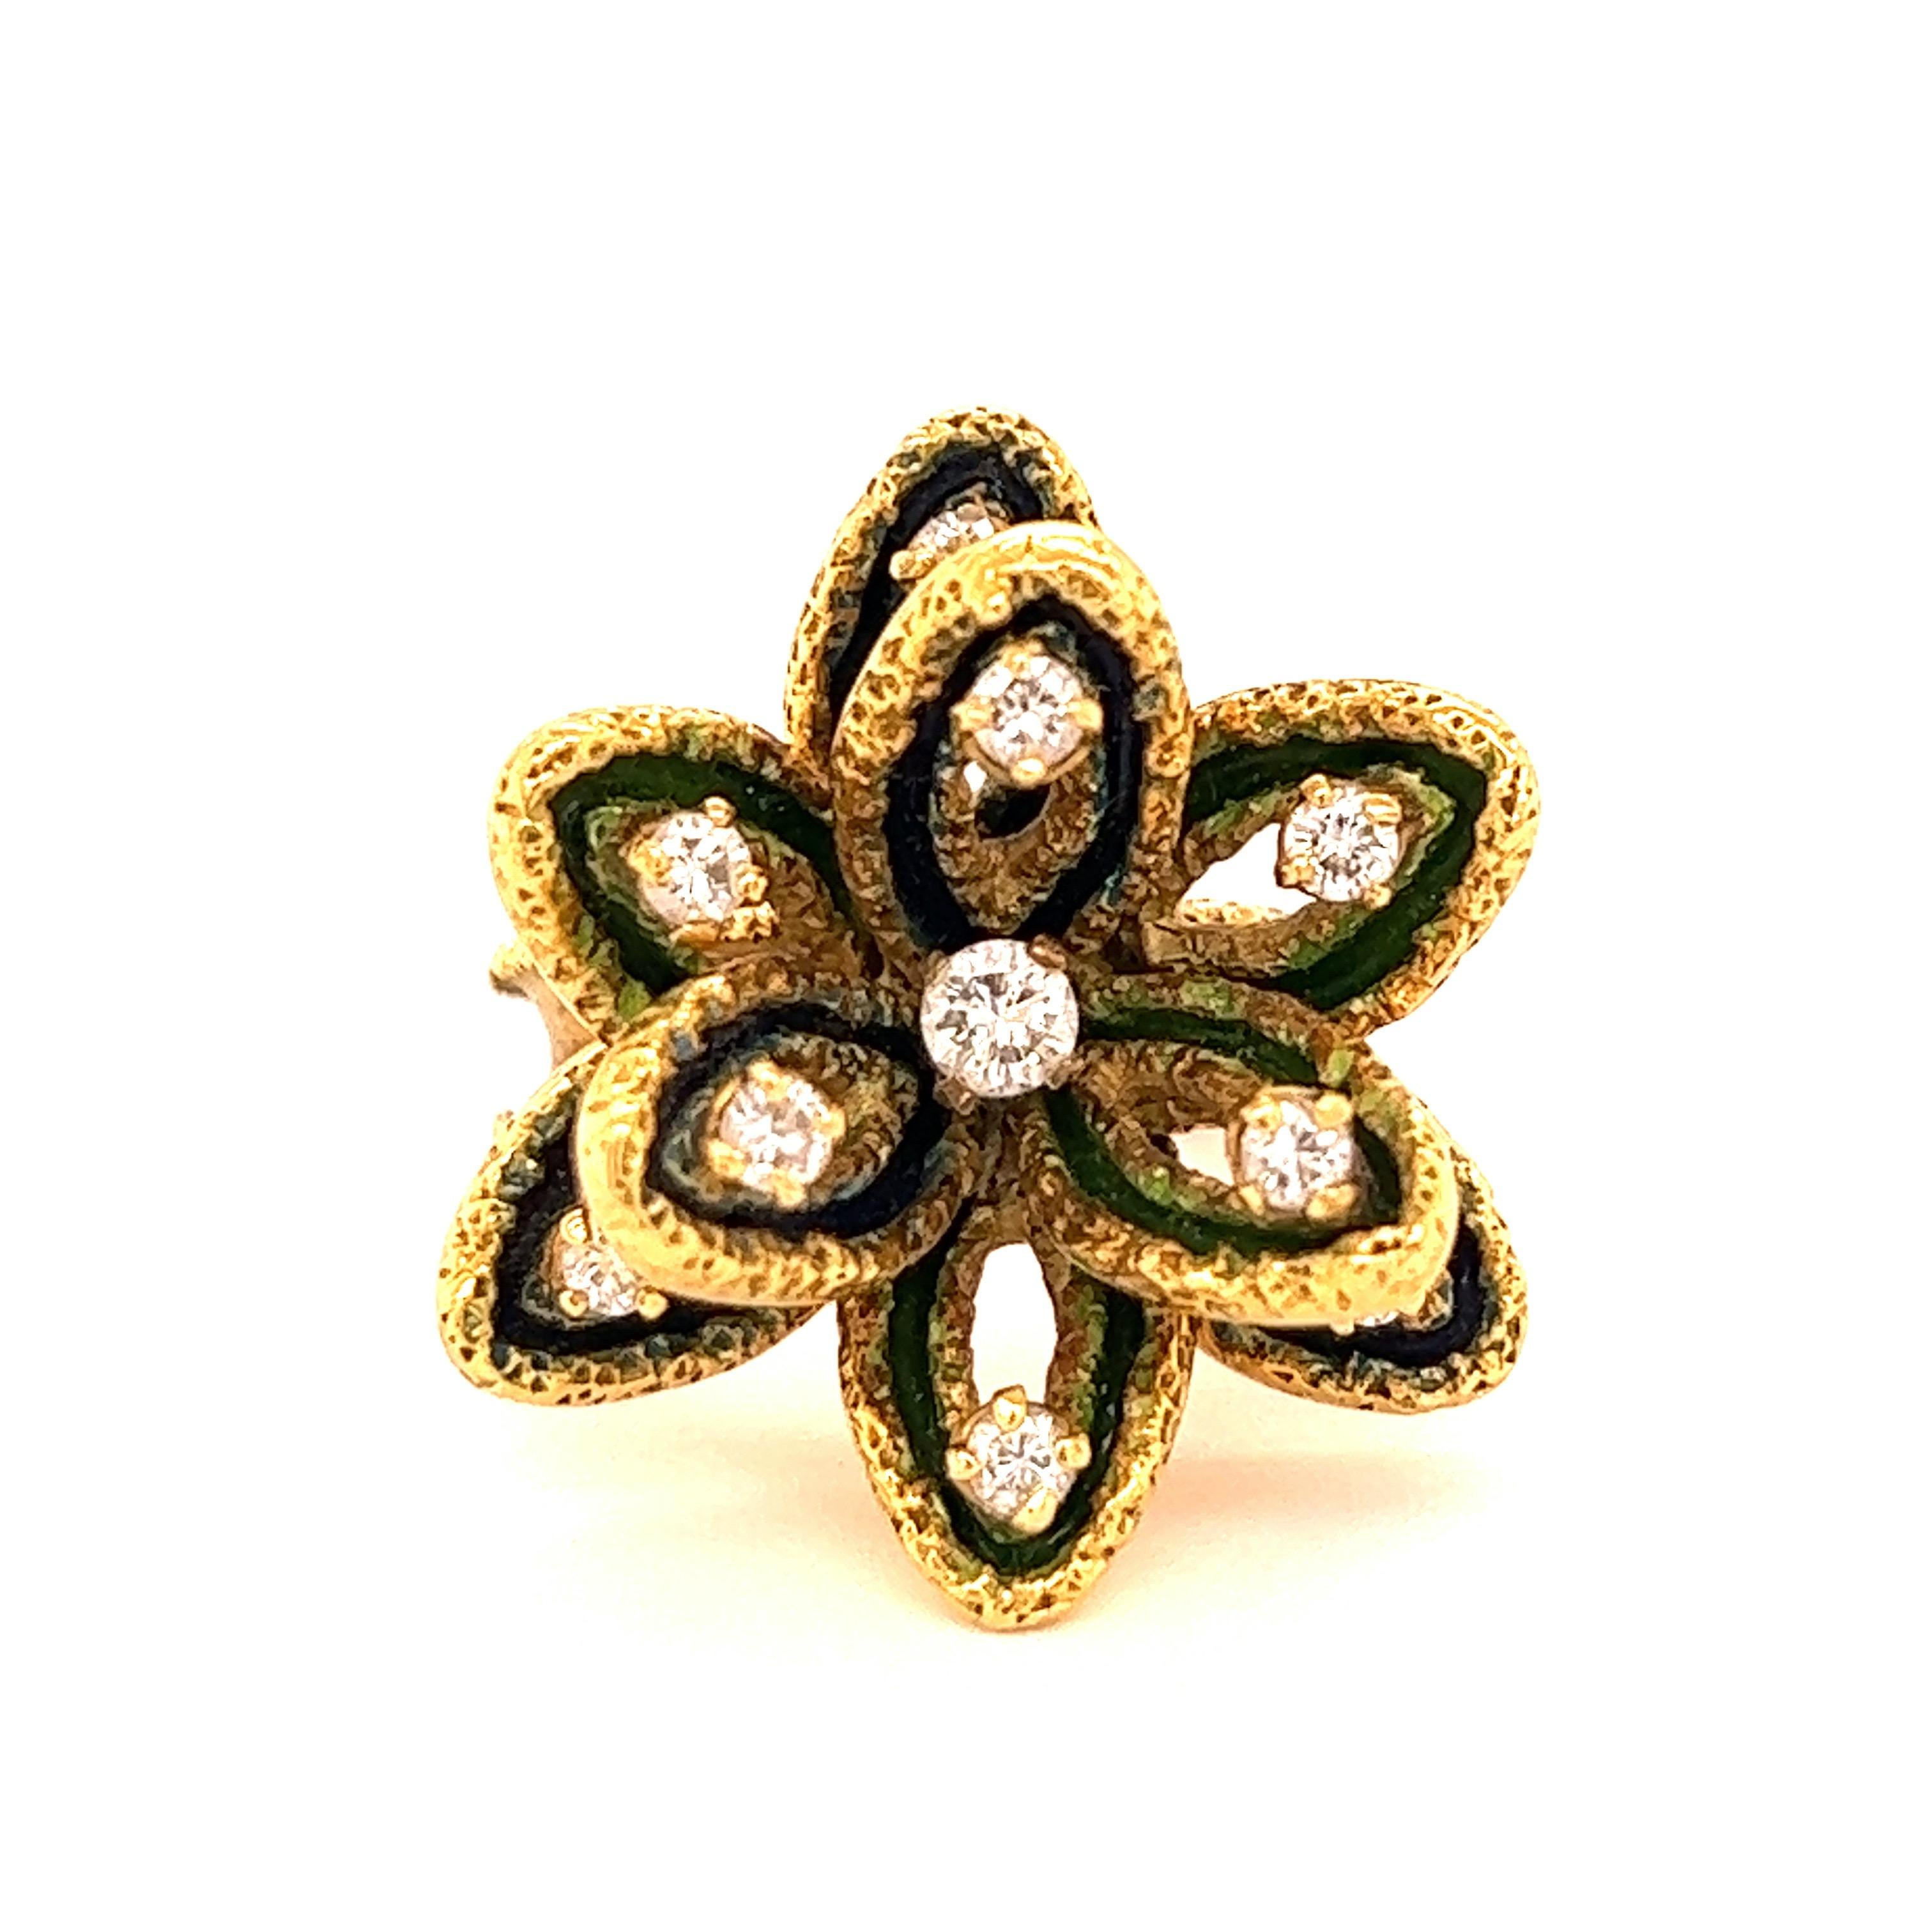 Boucheron Paris Blumen-Diamant-Ring

Zehn Diamanten im Rundschliff von ca. 0,50 Karat, gefasst auf 18 Karat Gelbgold, mit einem Blumenmotiv; gemarkt Boucheron Paris, 50208

Größe: Obere Breite 2,5 cm
Gesamtgewicht: 14.0 Gramm